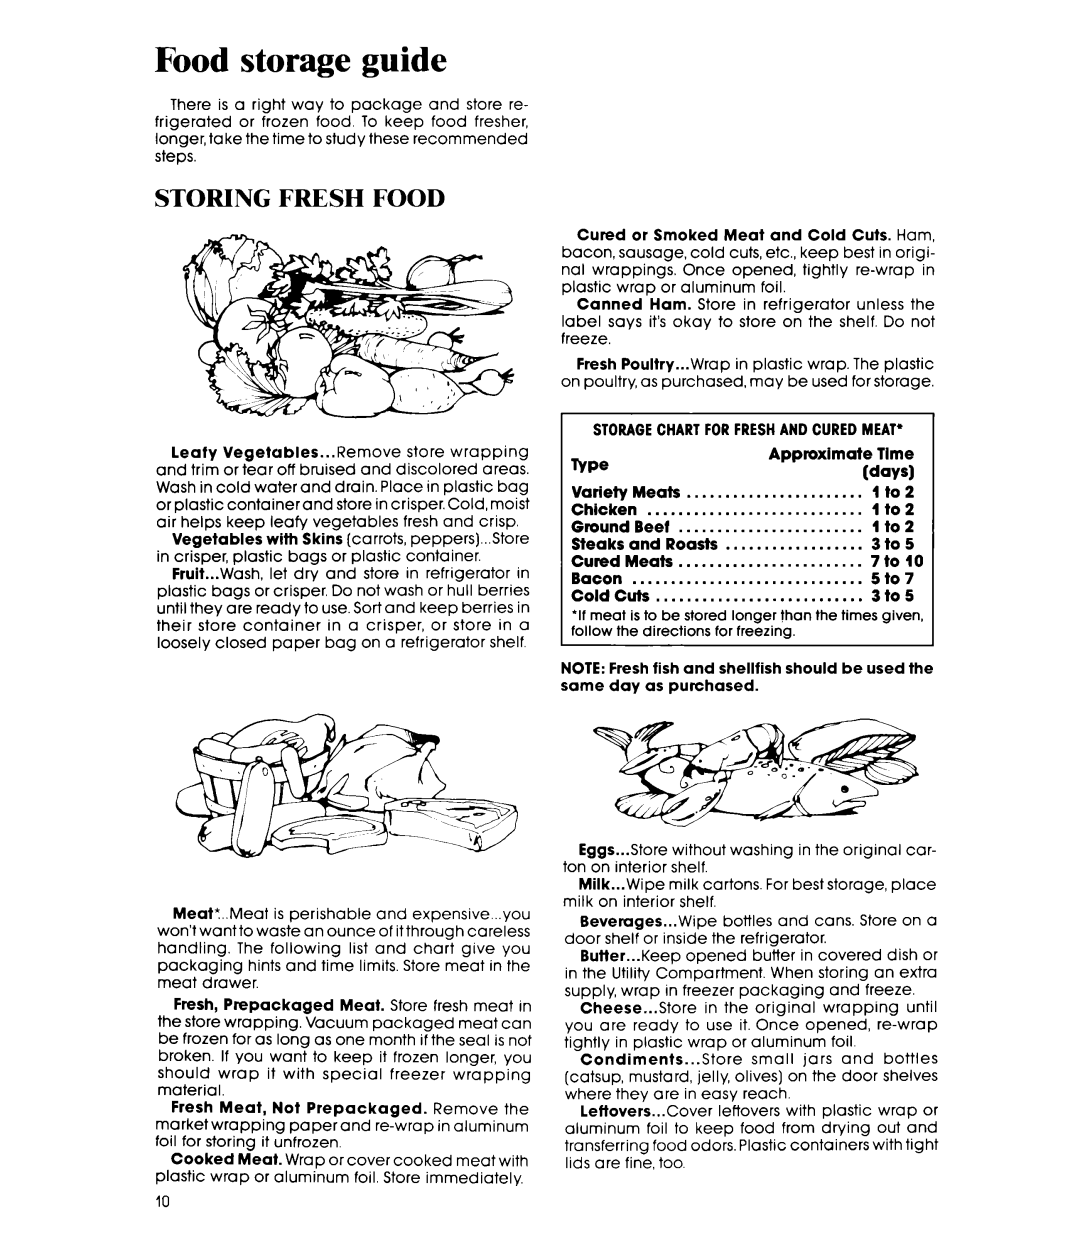 Whirlpool ETl8AK manual Food storage guide, Storing Fresh Food, rVpe 